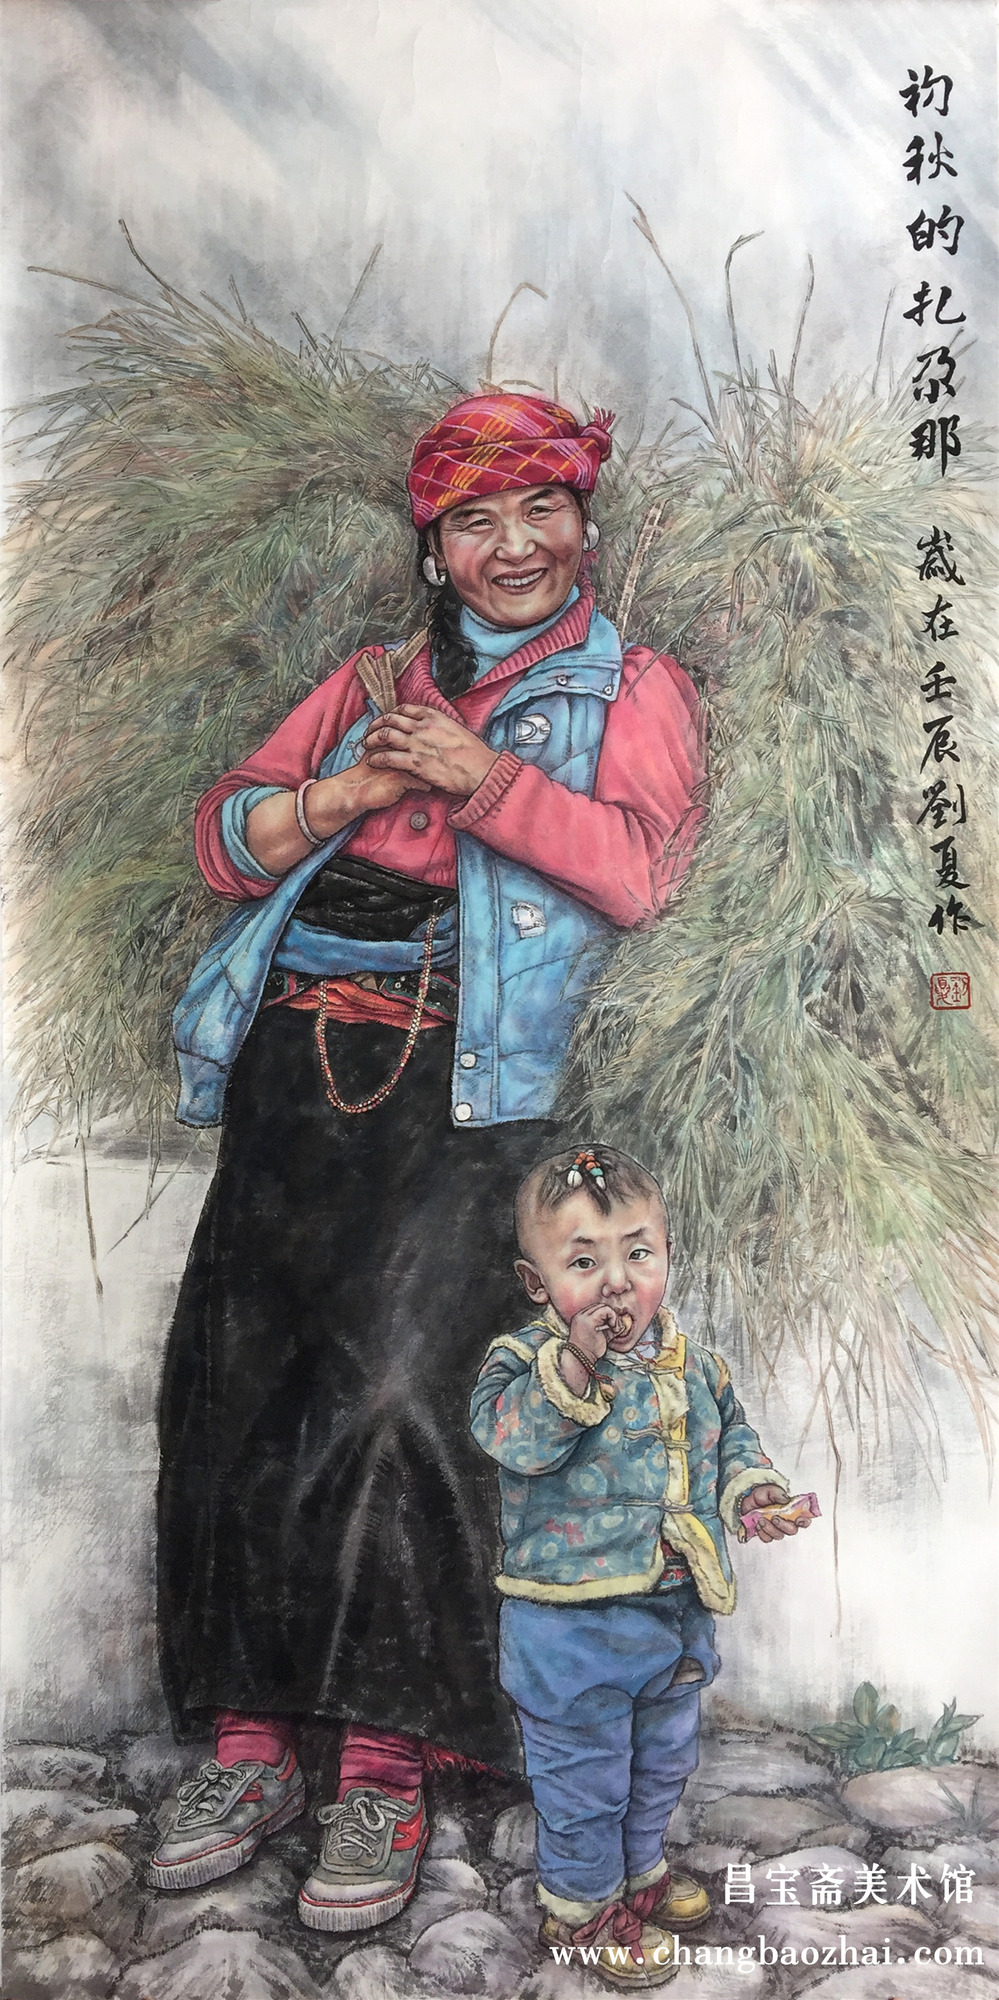 刘夏,本科毕业于中央美术学院中国画学院,水墨人物工作室,获文学学士